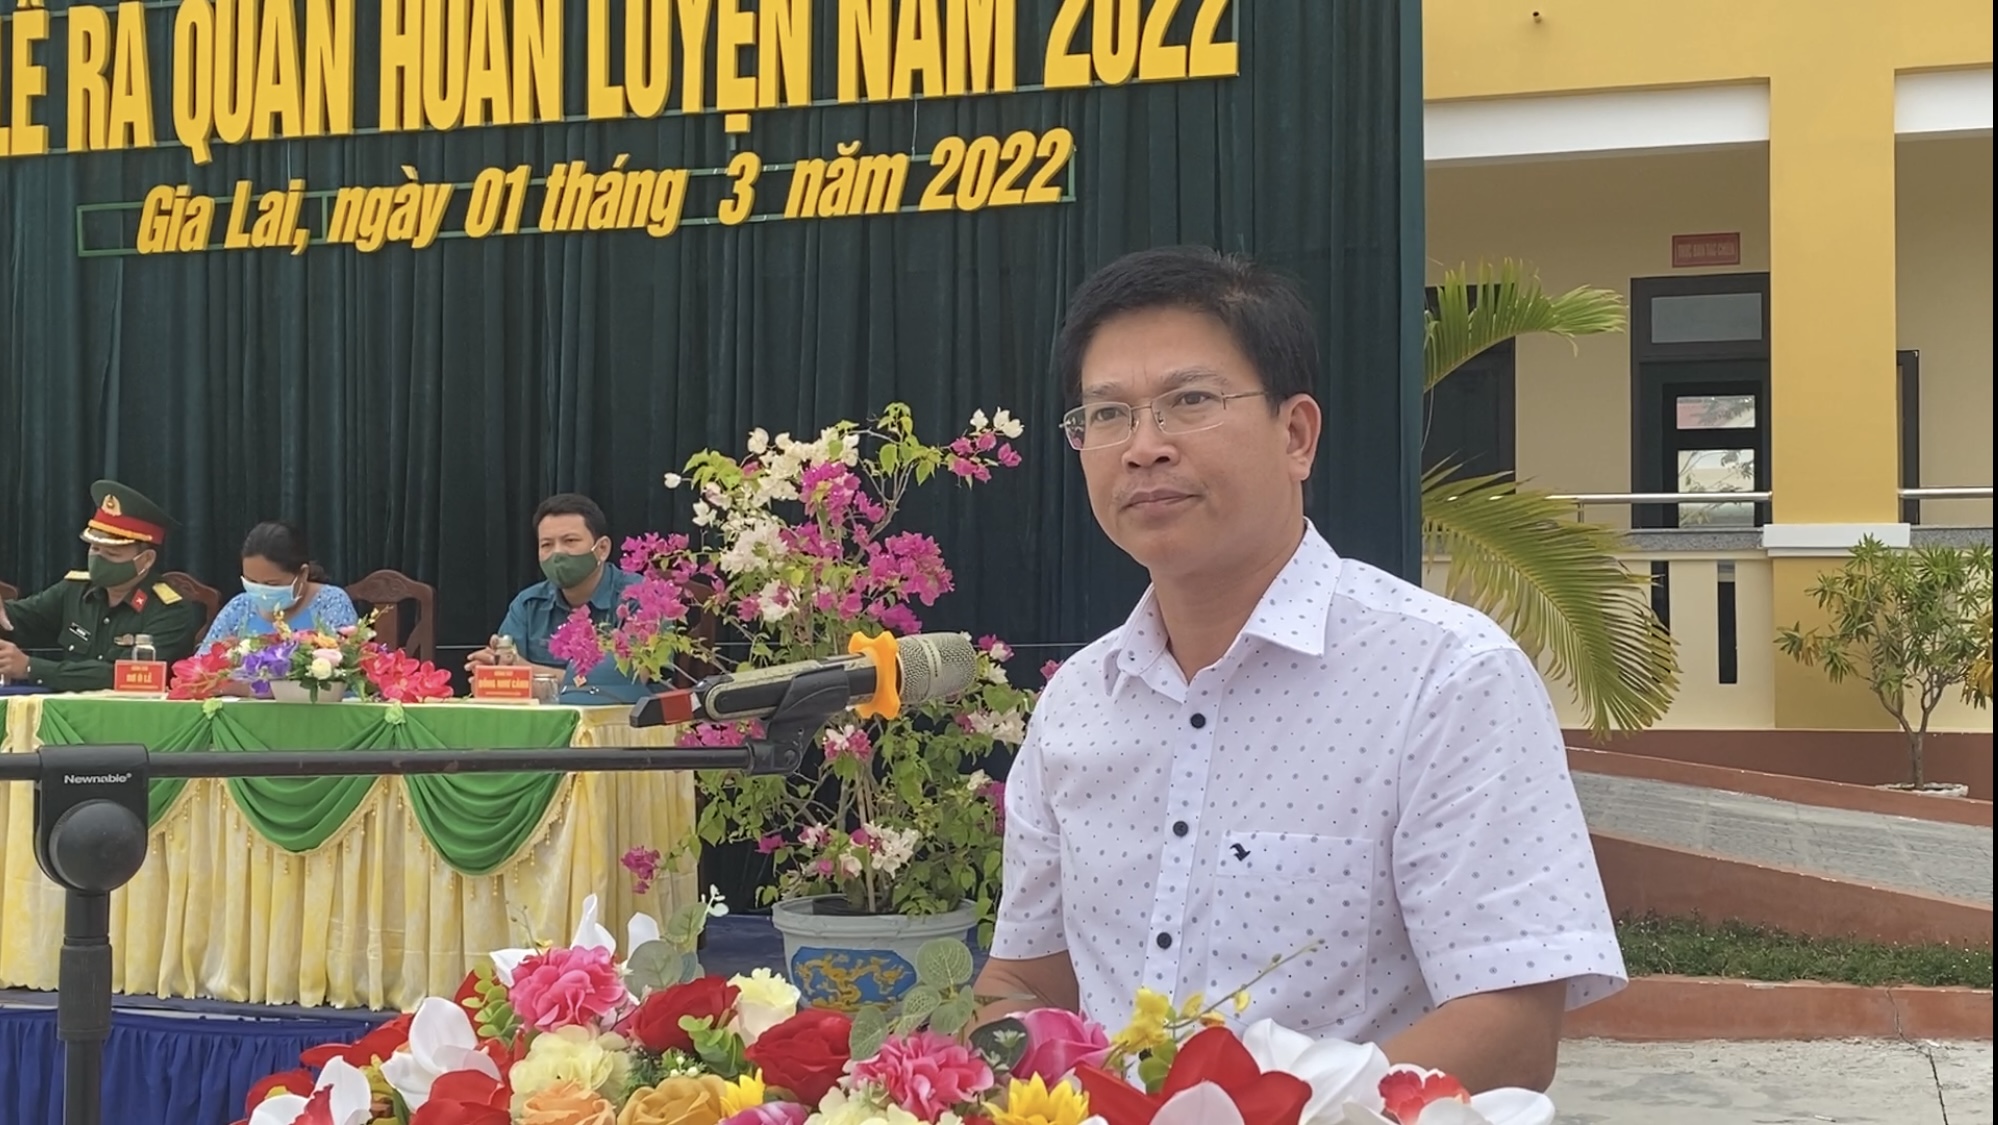 Huyện Krông Pa: Tổ chức Lễ ra quân huấn luyện năm 2022